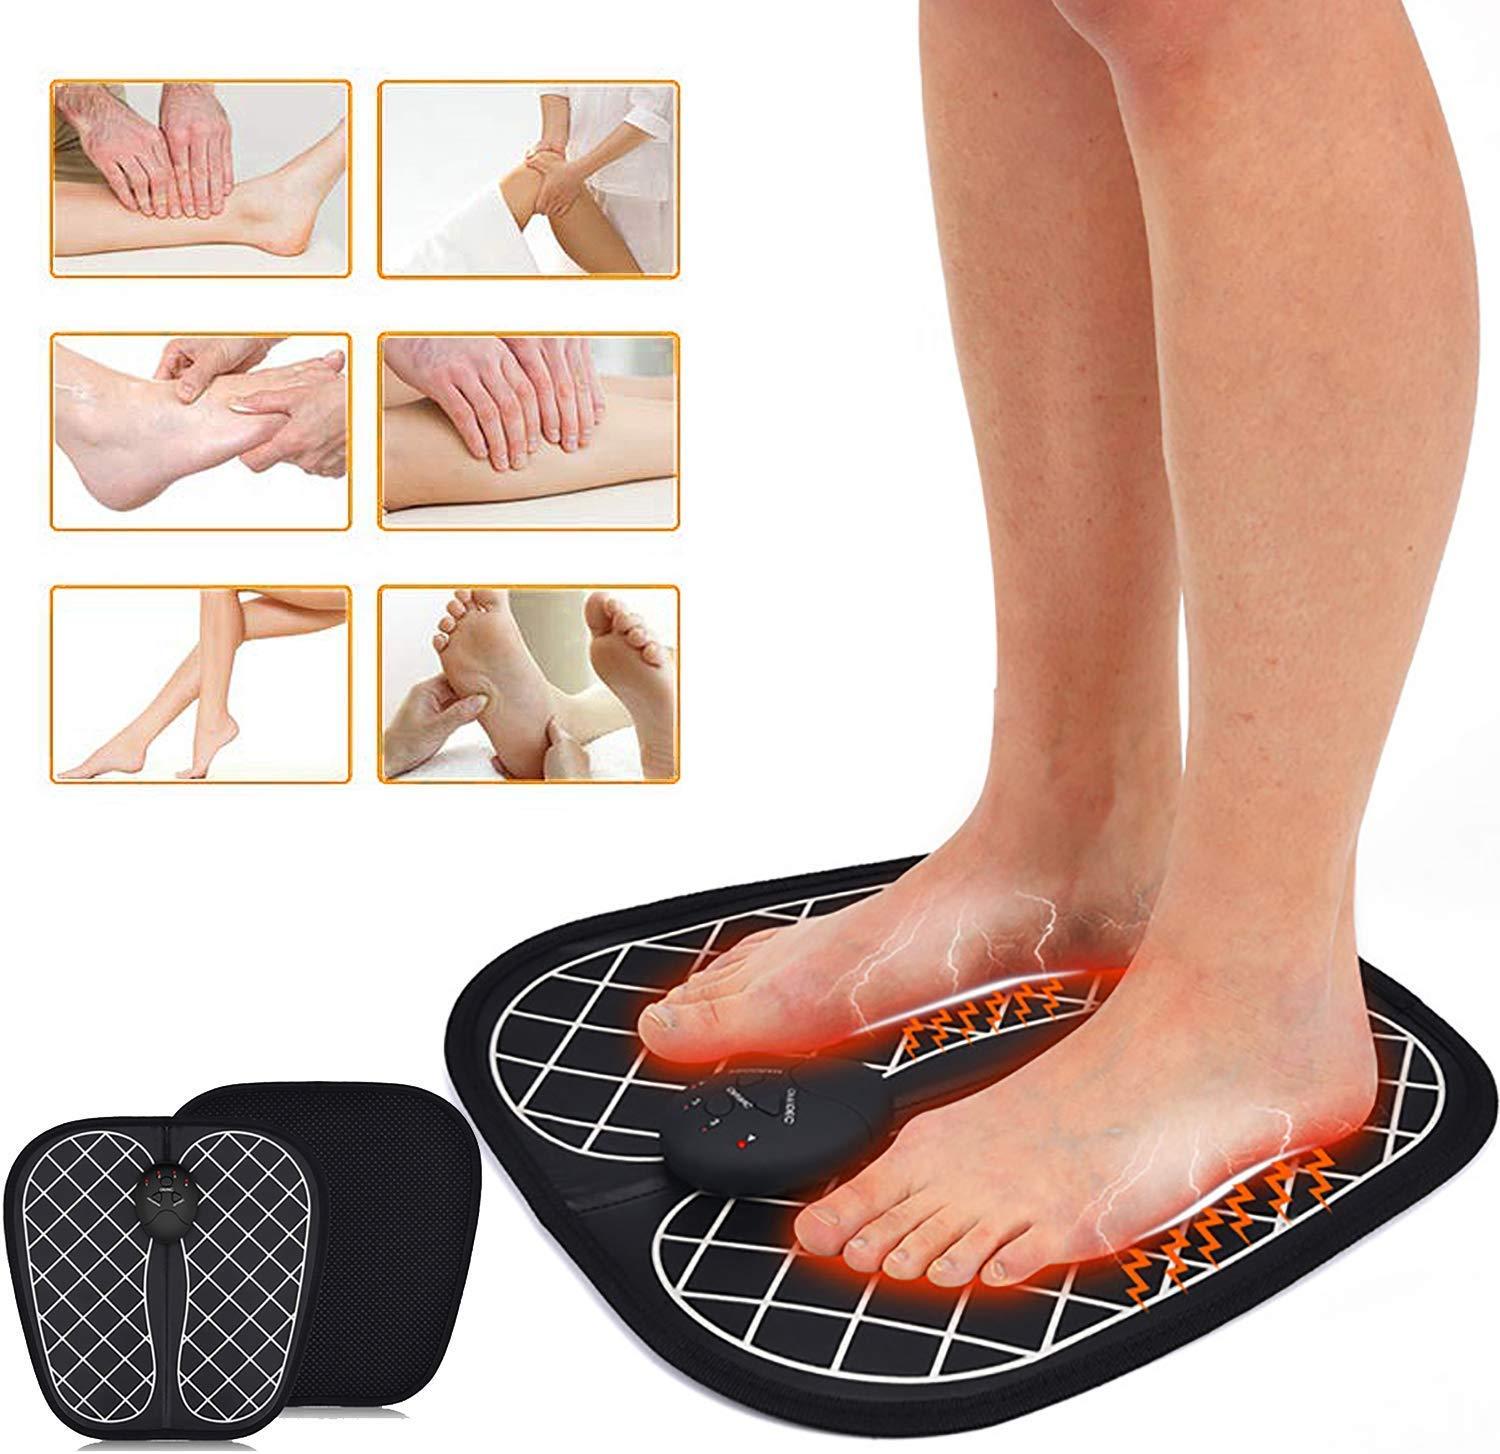 Covor EMS pentru masajul picioarelor